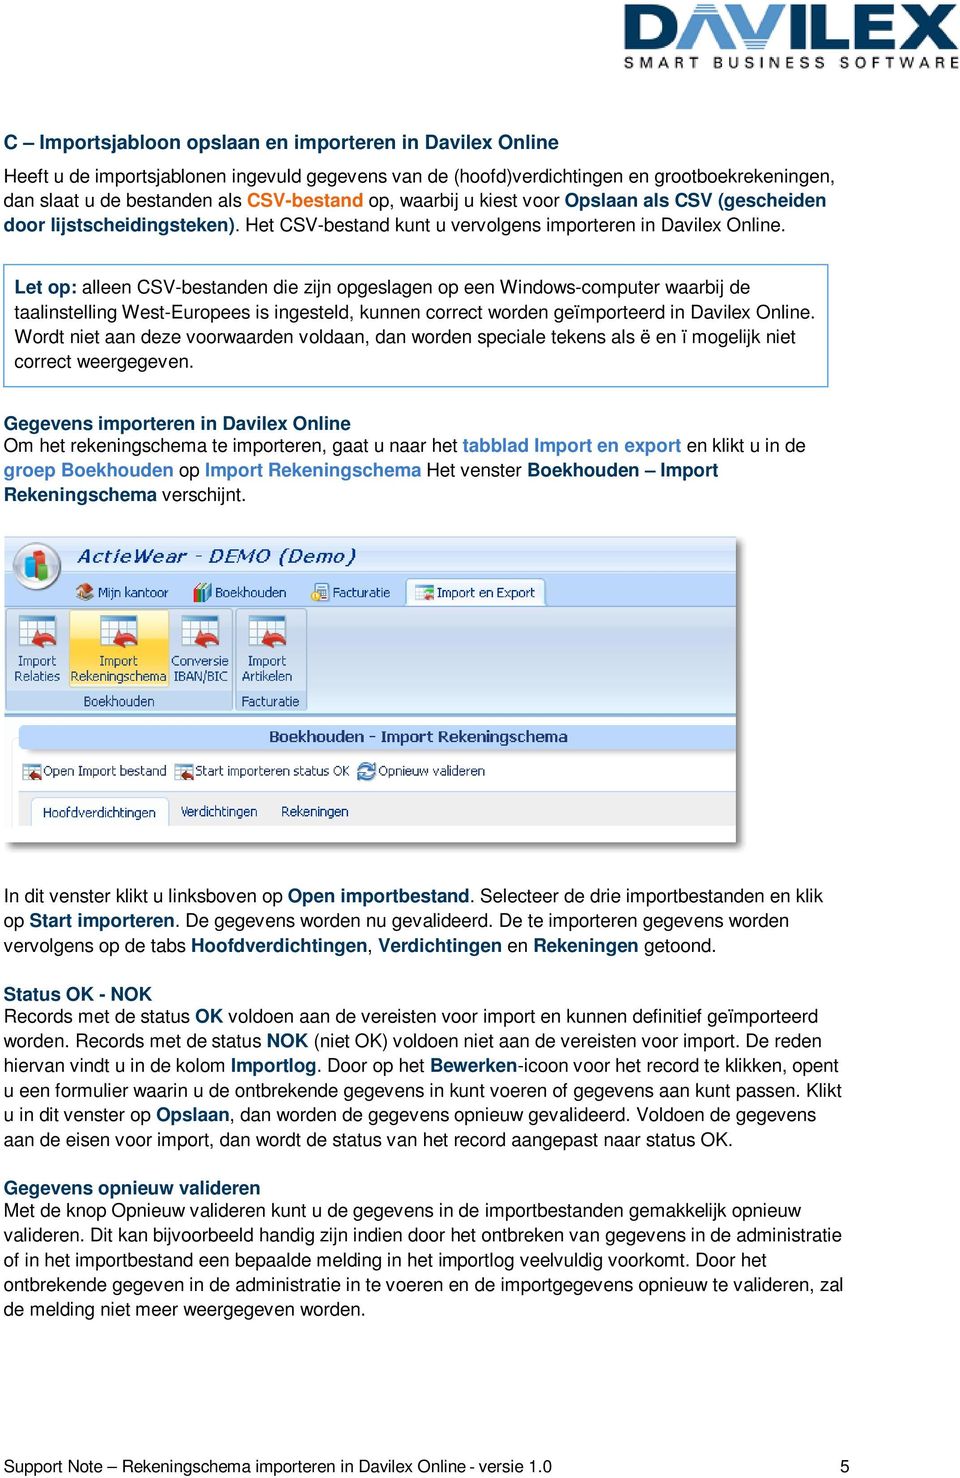 Let op: alleen CSV-bestanden die zijn opgeslagen op een Windows-computer waarbij de taalinstelling West-Europees is ingesteld, kunnen correct worden geïmporteerd in Davilex Online.